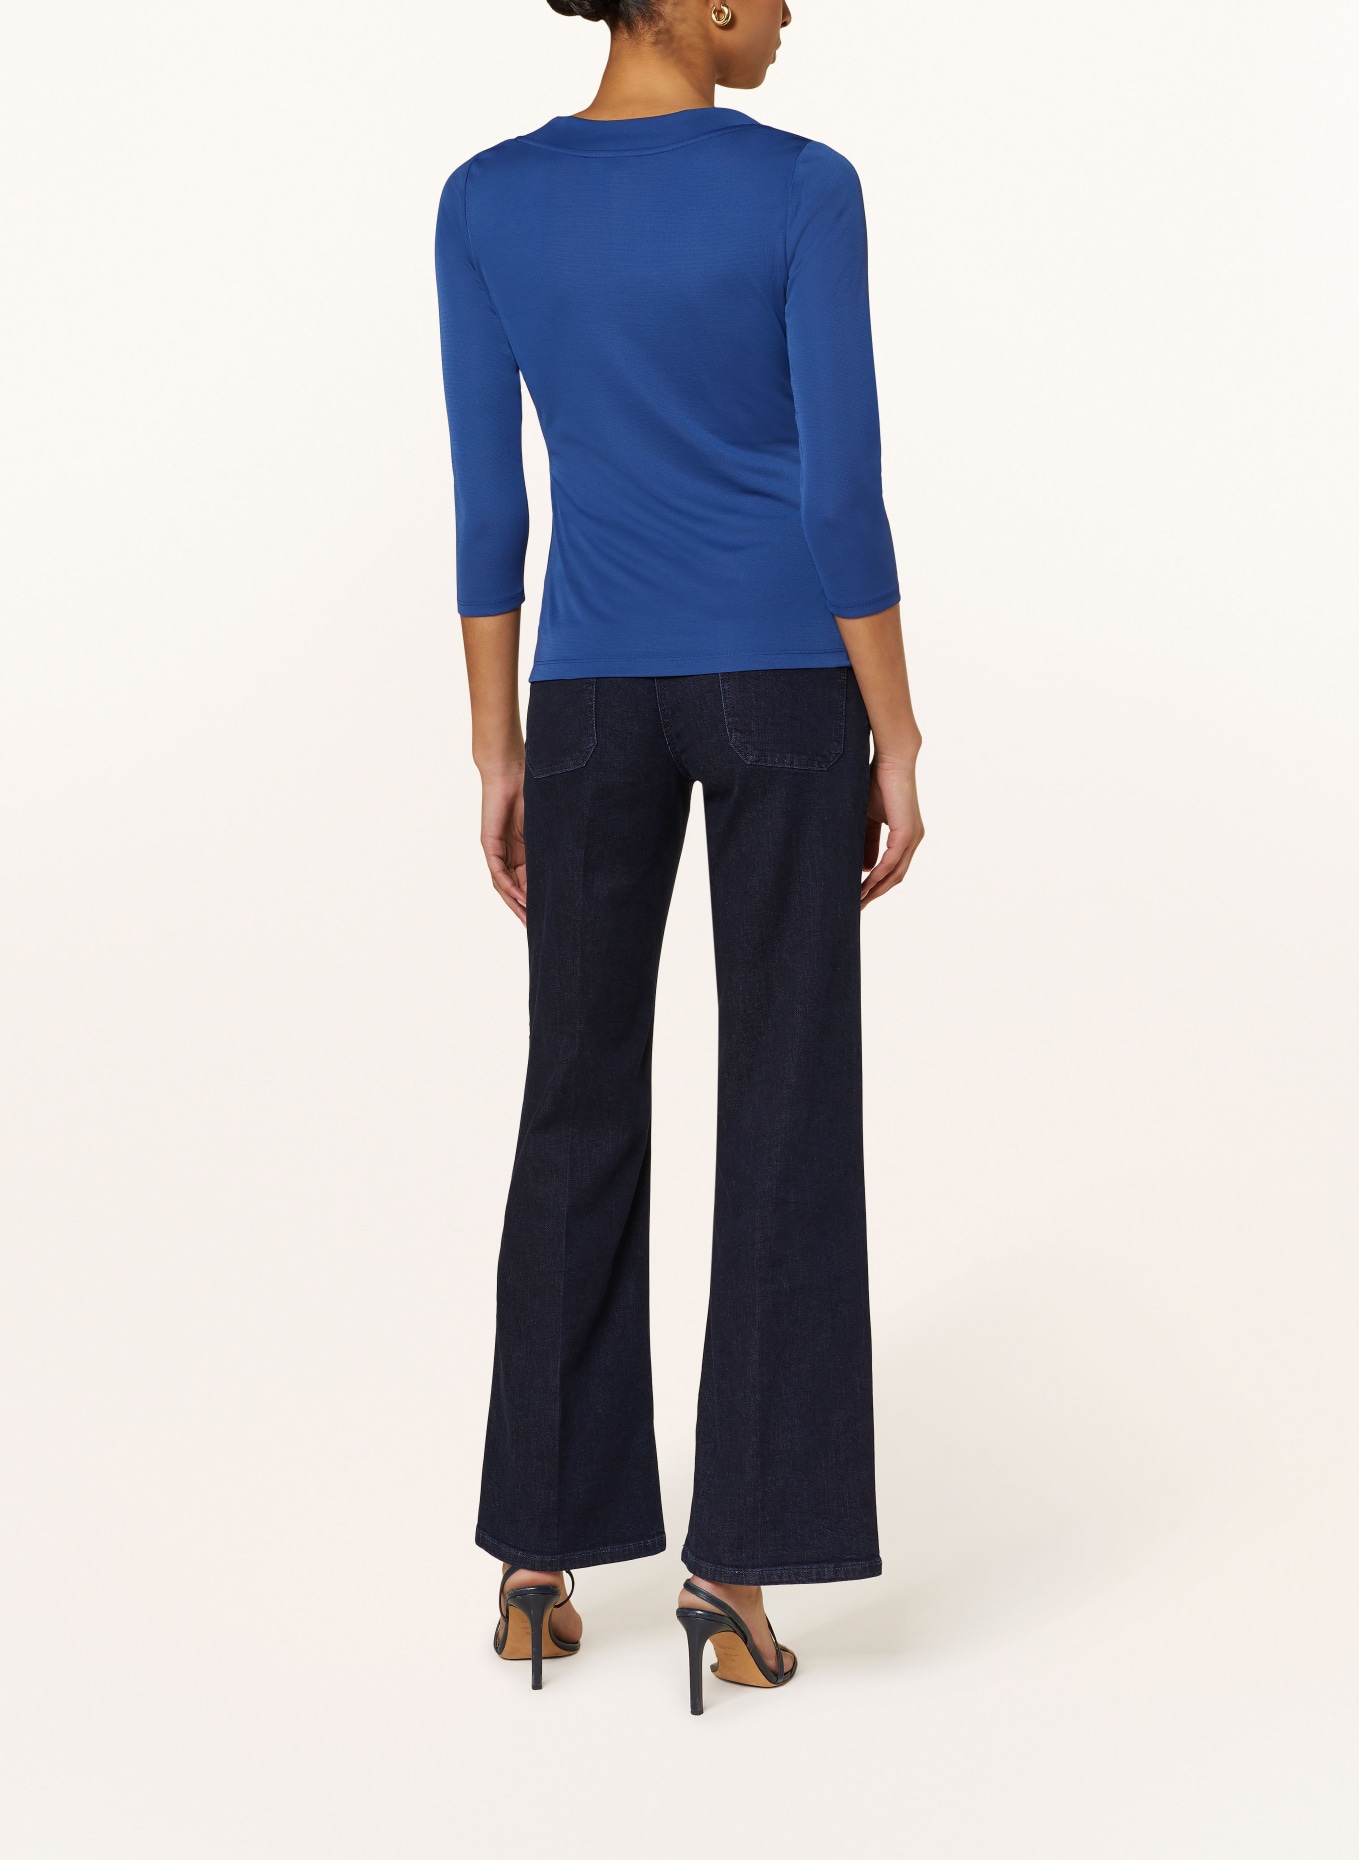 LAUREN RALPH LAUREN Shirt in wrap look with 3/4 sleeves, Color: BLUE (Image 3)